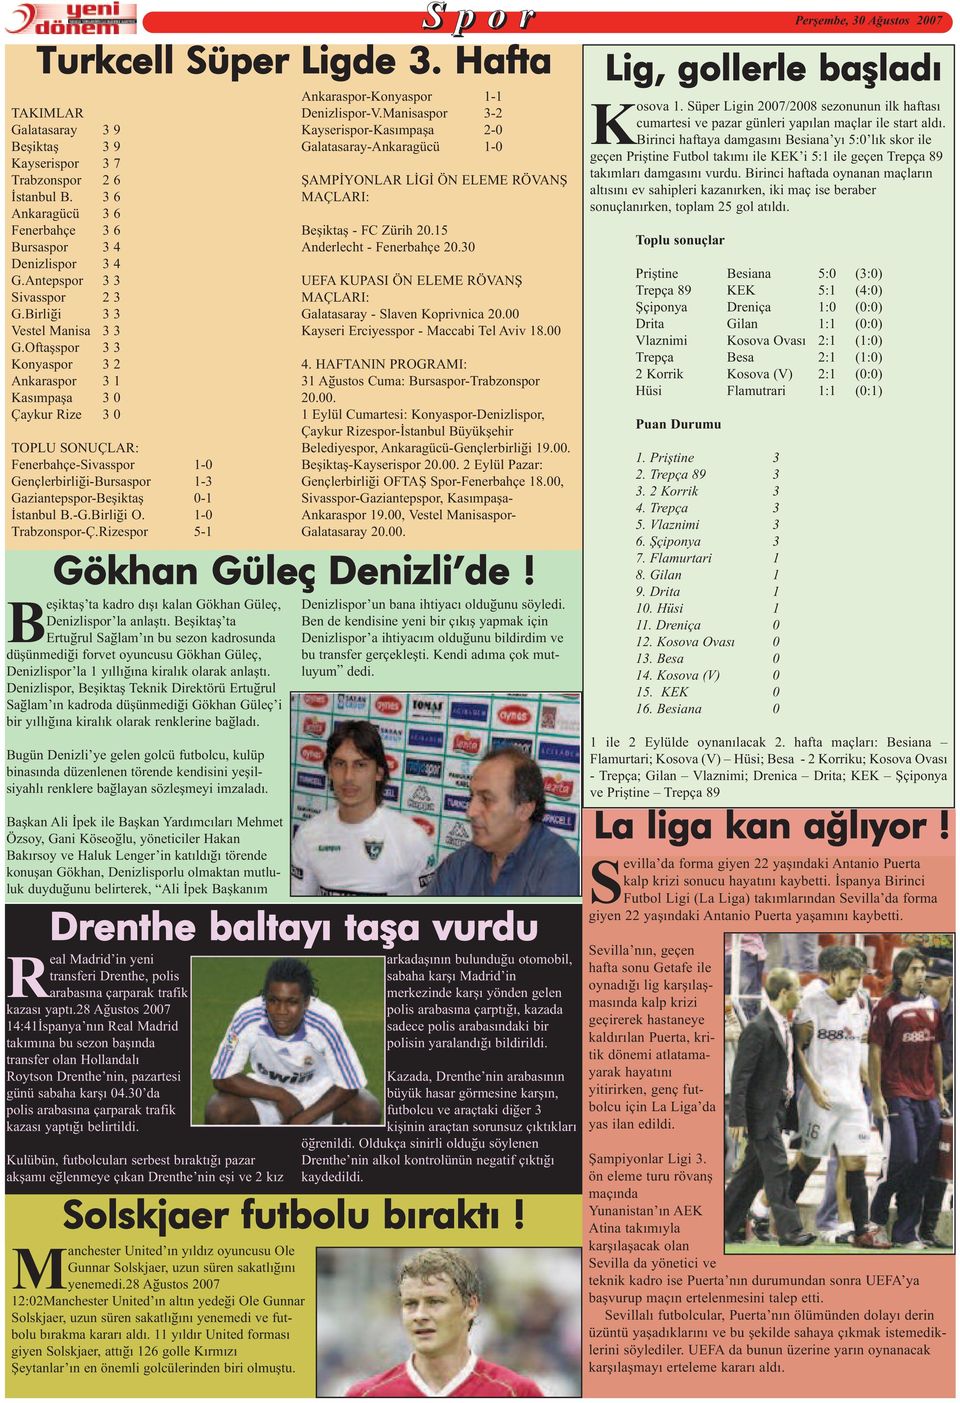 Oftaşspor 3 3 Konyaspor 3 2 Ankaraspor 3 1 Kasýmpaþa 3 0 Çaykur Rize 3 0 TOPLU SONUÇLAR: Fenerbahçe-Sivasspor 1-0 Gençlerbirliði-Bursaspor 1-3 Gaziantepspor-Beşiktaş 0-1 Ýstanbul B.-G.Birliði O.